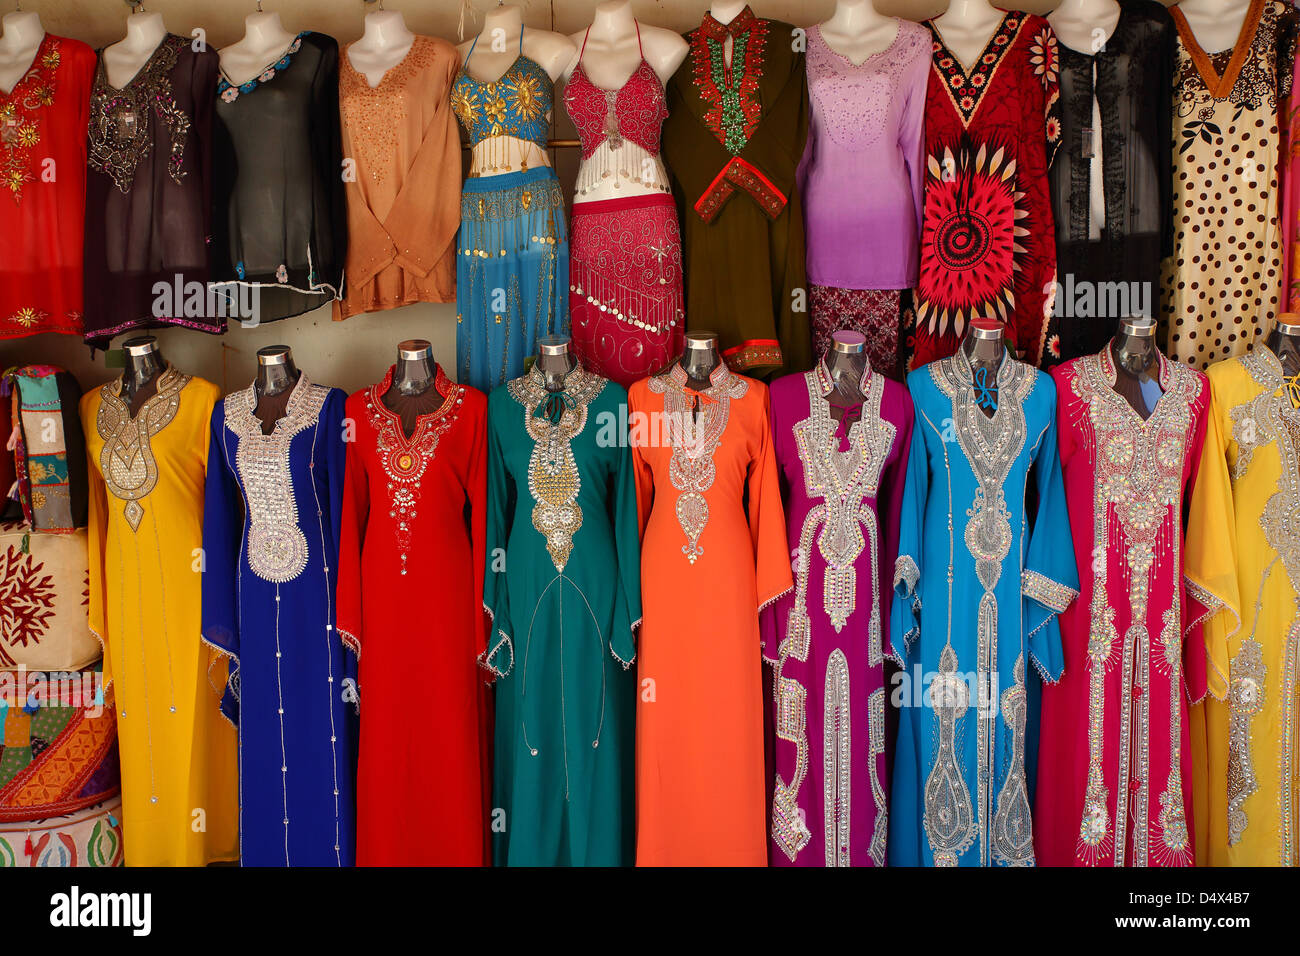 Bunte Kleider auf dem Display am Markt in Dubai, Vereinigte Arabische  Emirate Stockfotografie - Alamy